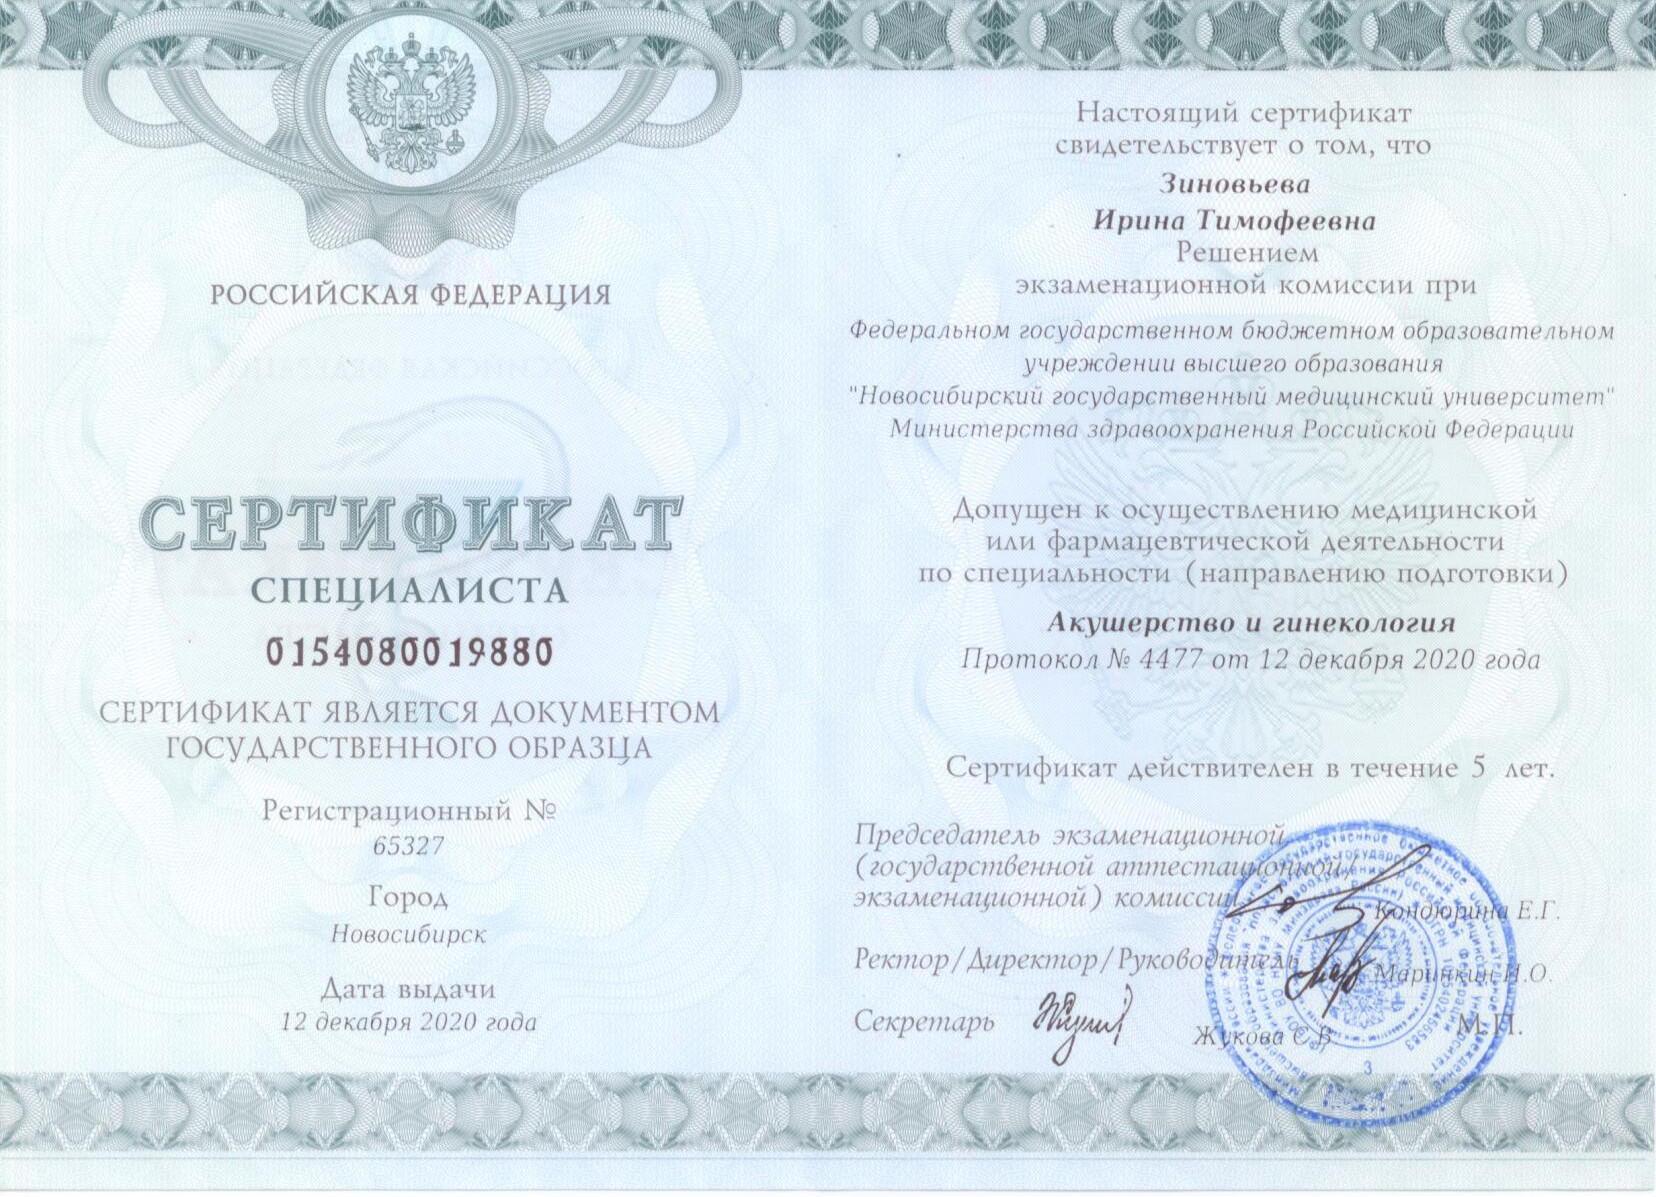 Акушерство и гинекология. Сертификат Зиновьевой И.Т.